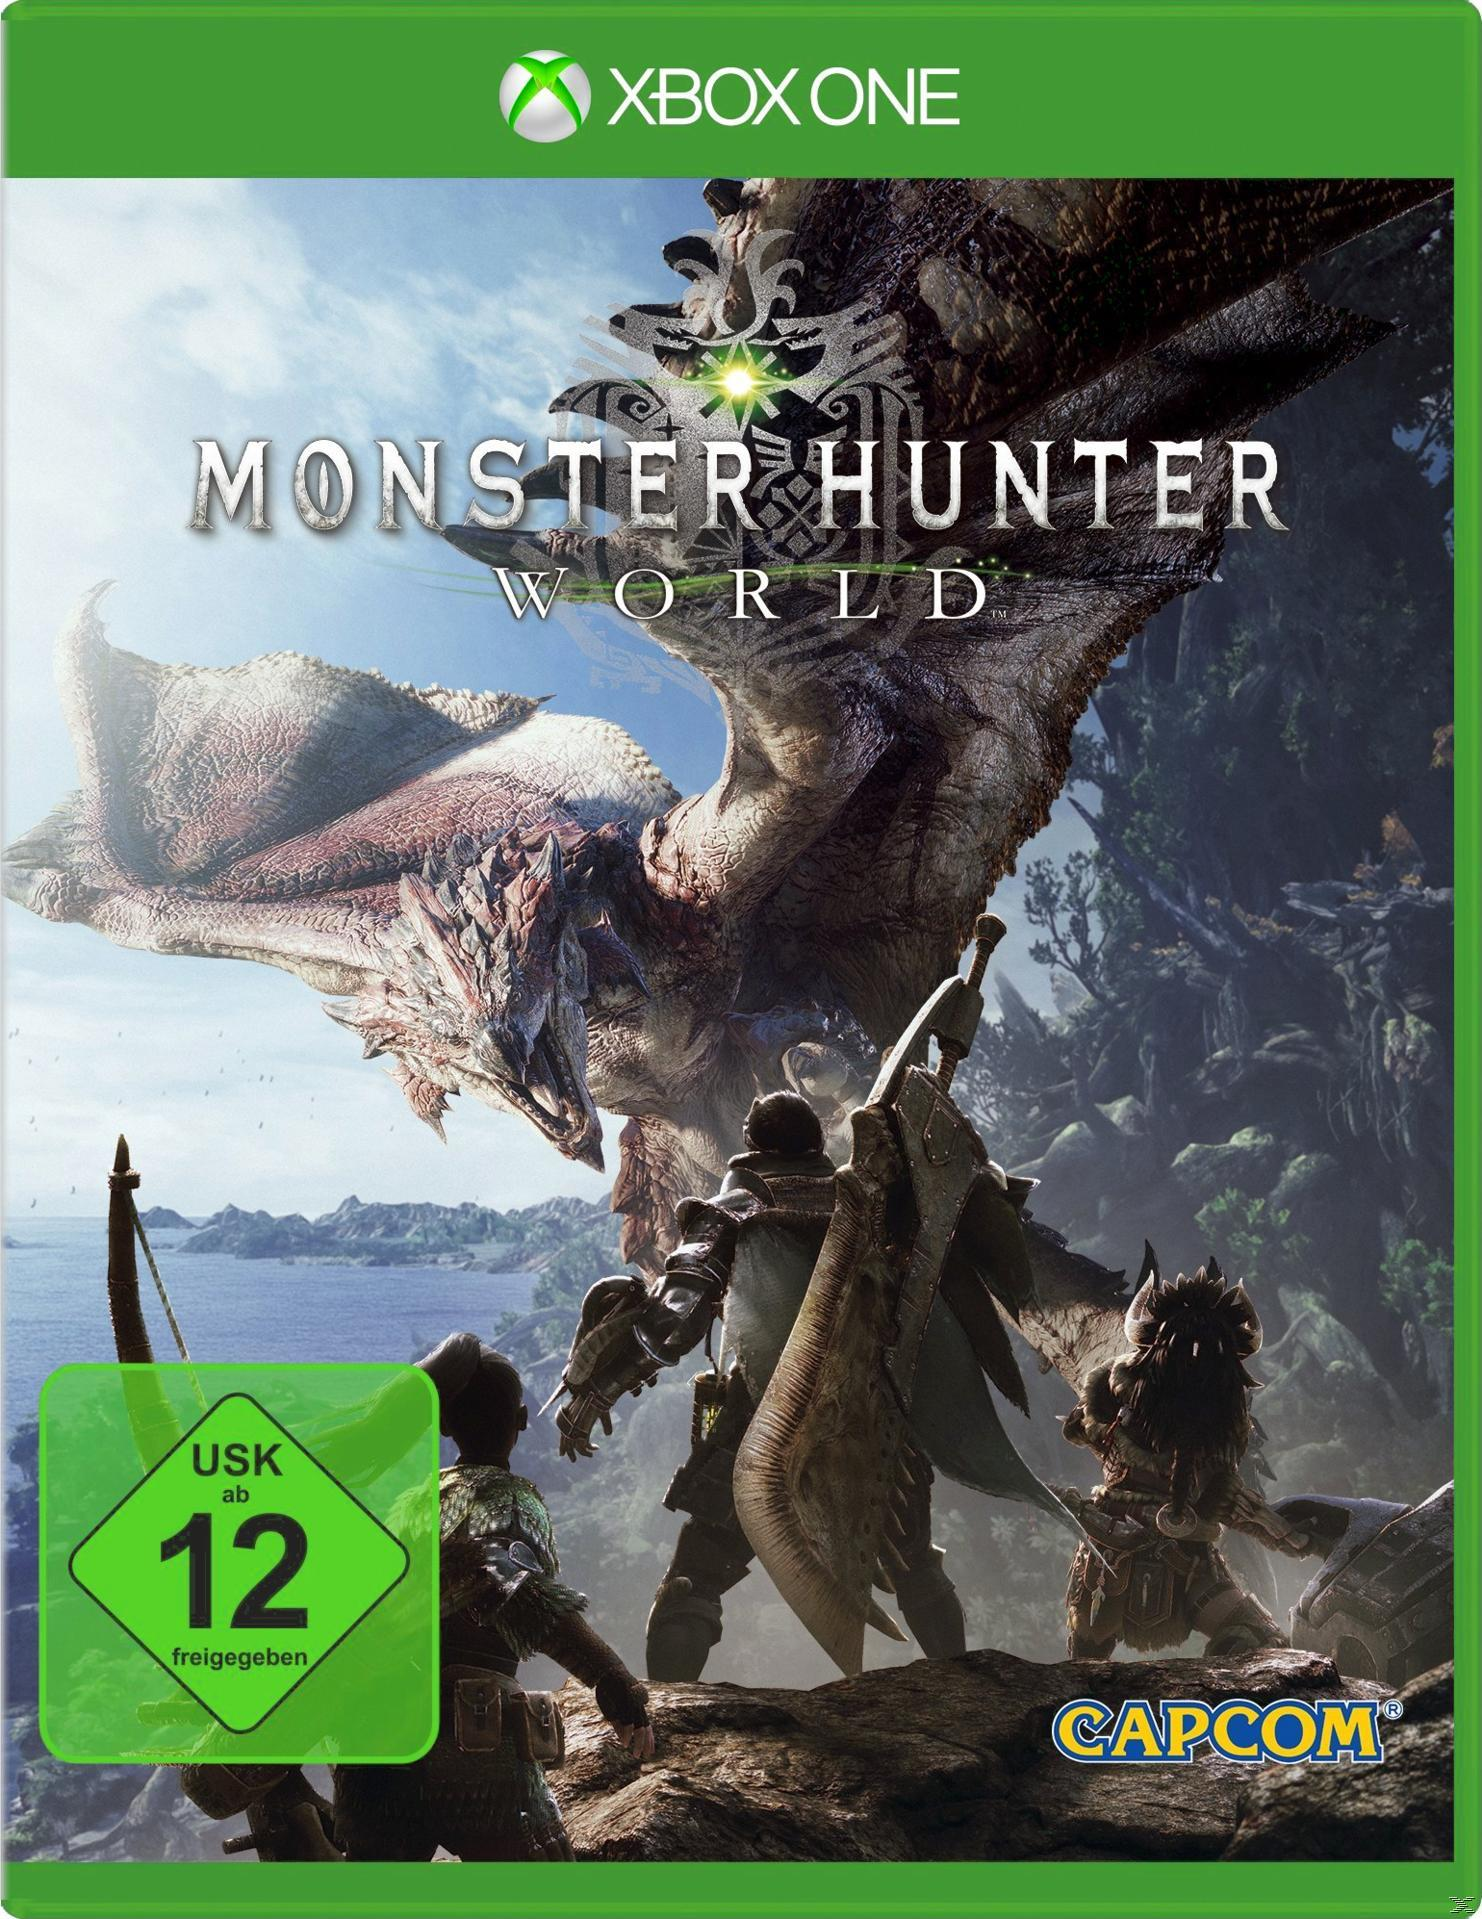 MONSTER HUNTER WORLD - [Xbox One